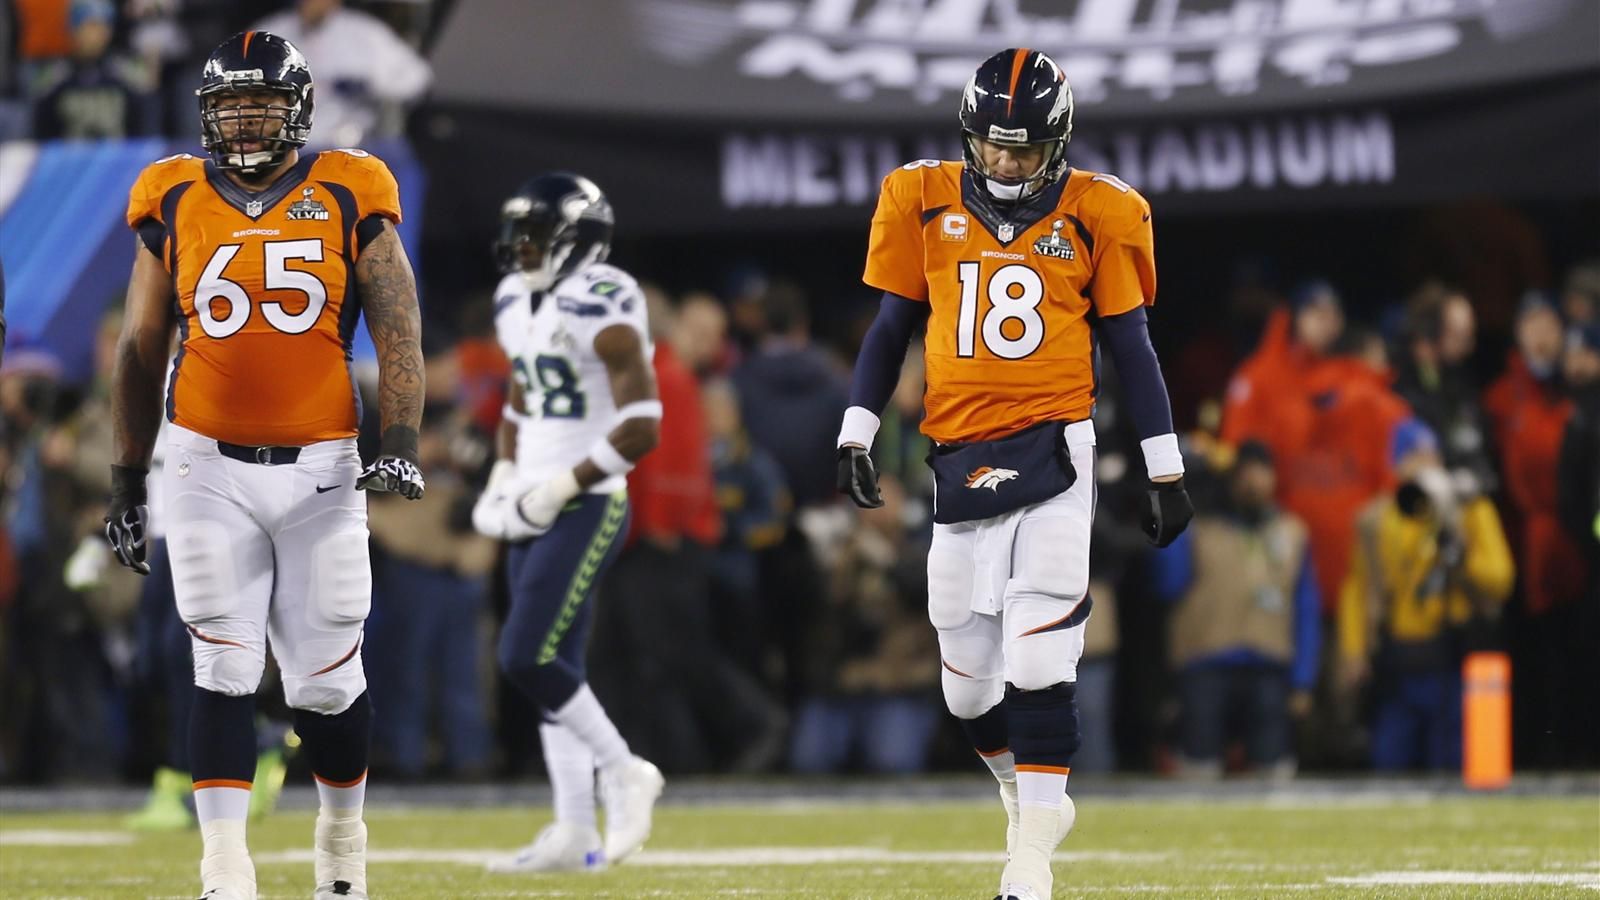 Denver Broncos quarterback Peyton Manning walks with teammate